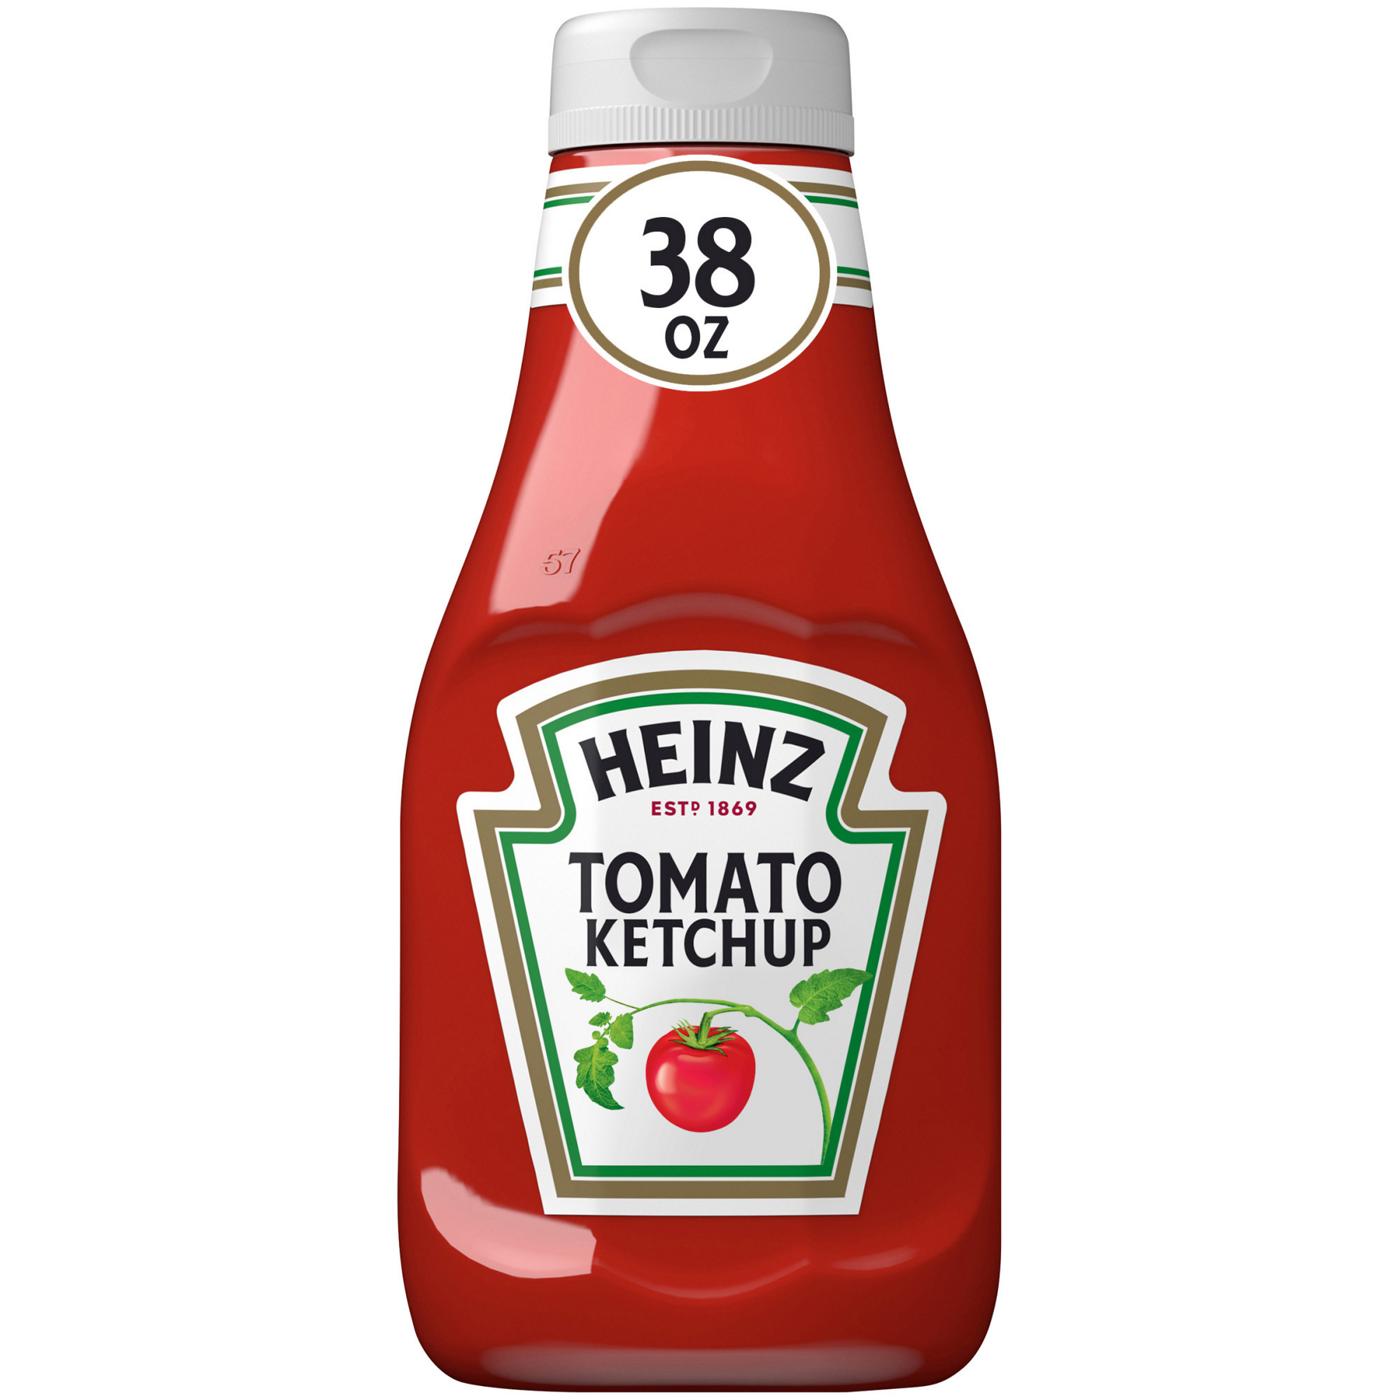 Heinz Tomato Ketchup; image 1 of 7